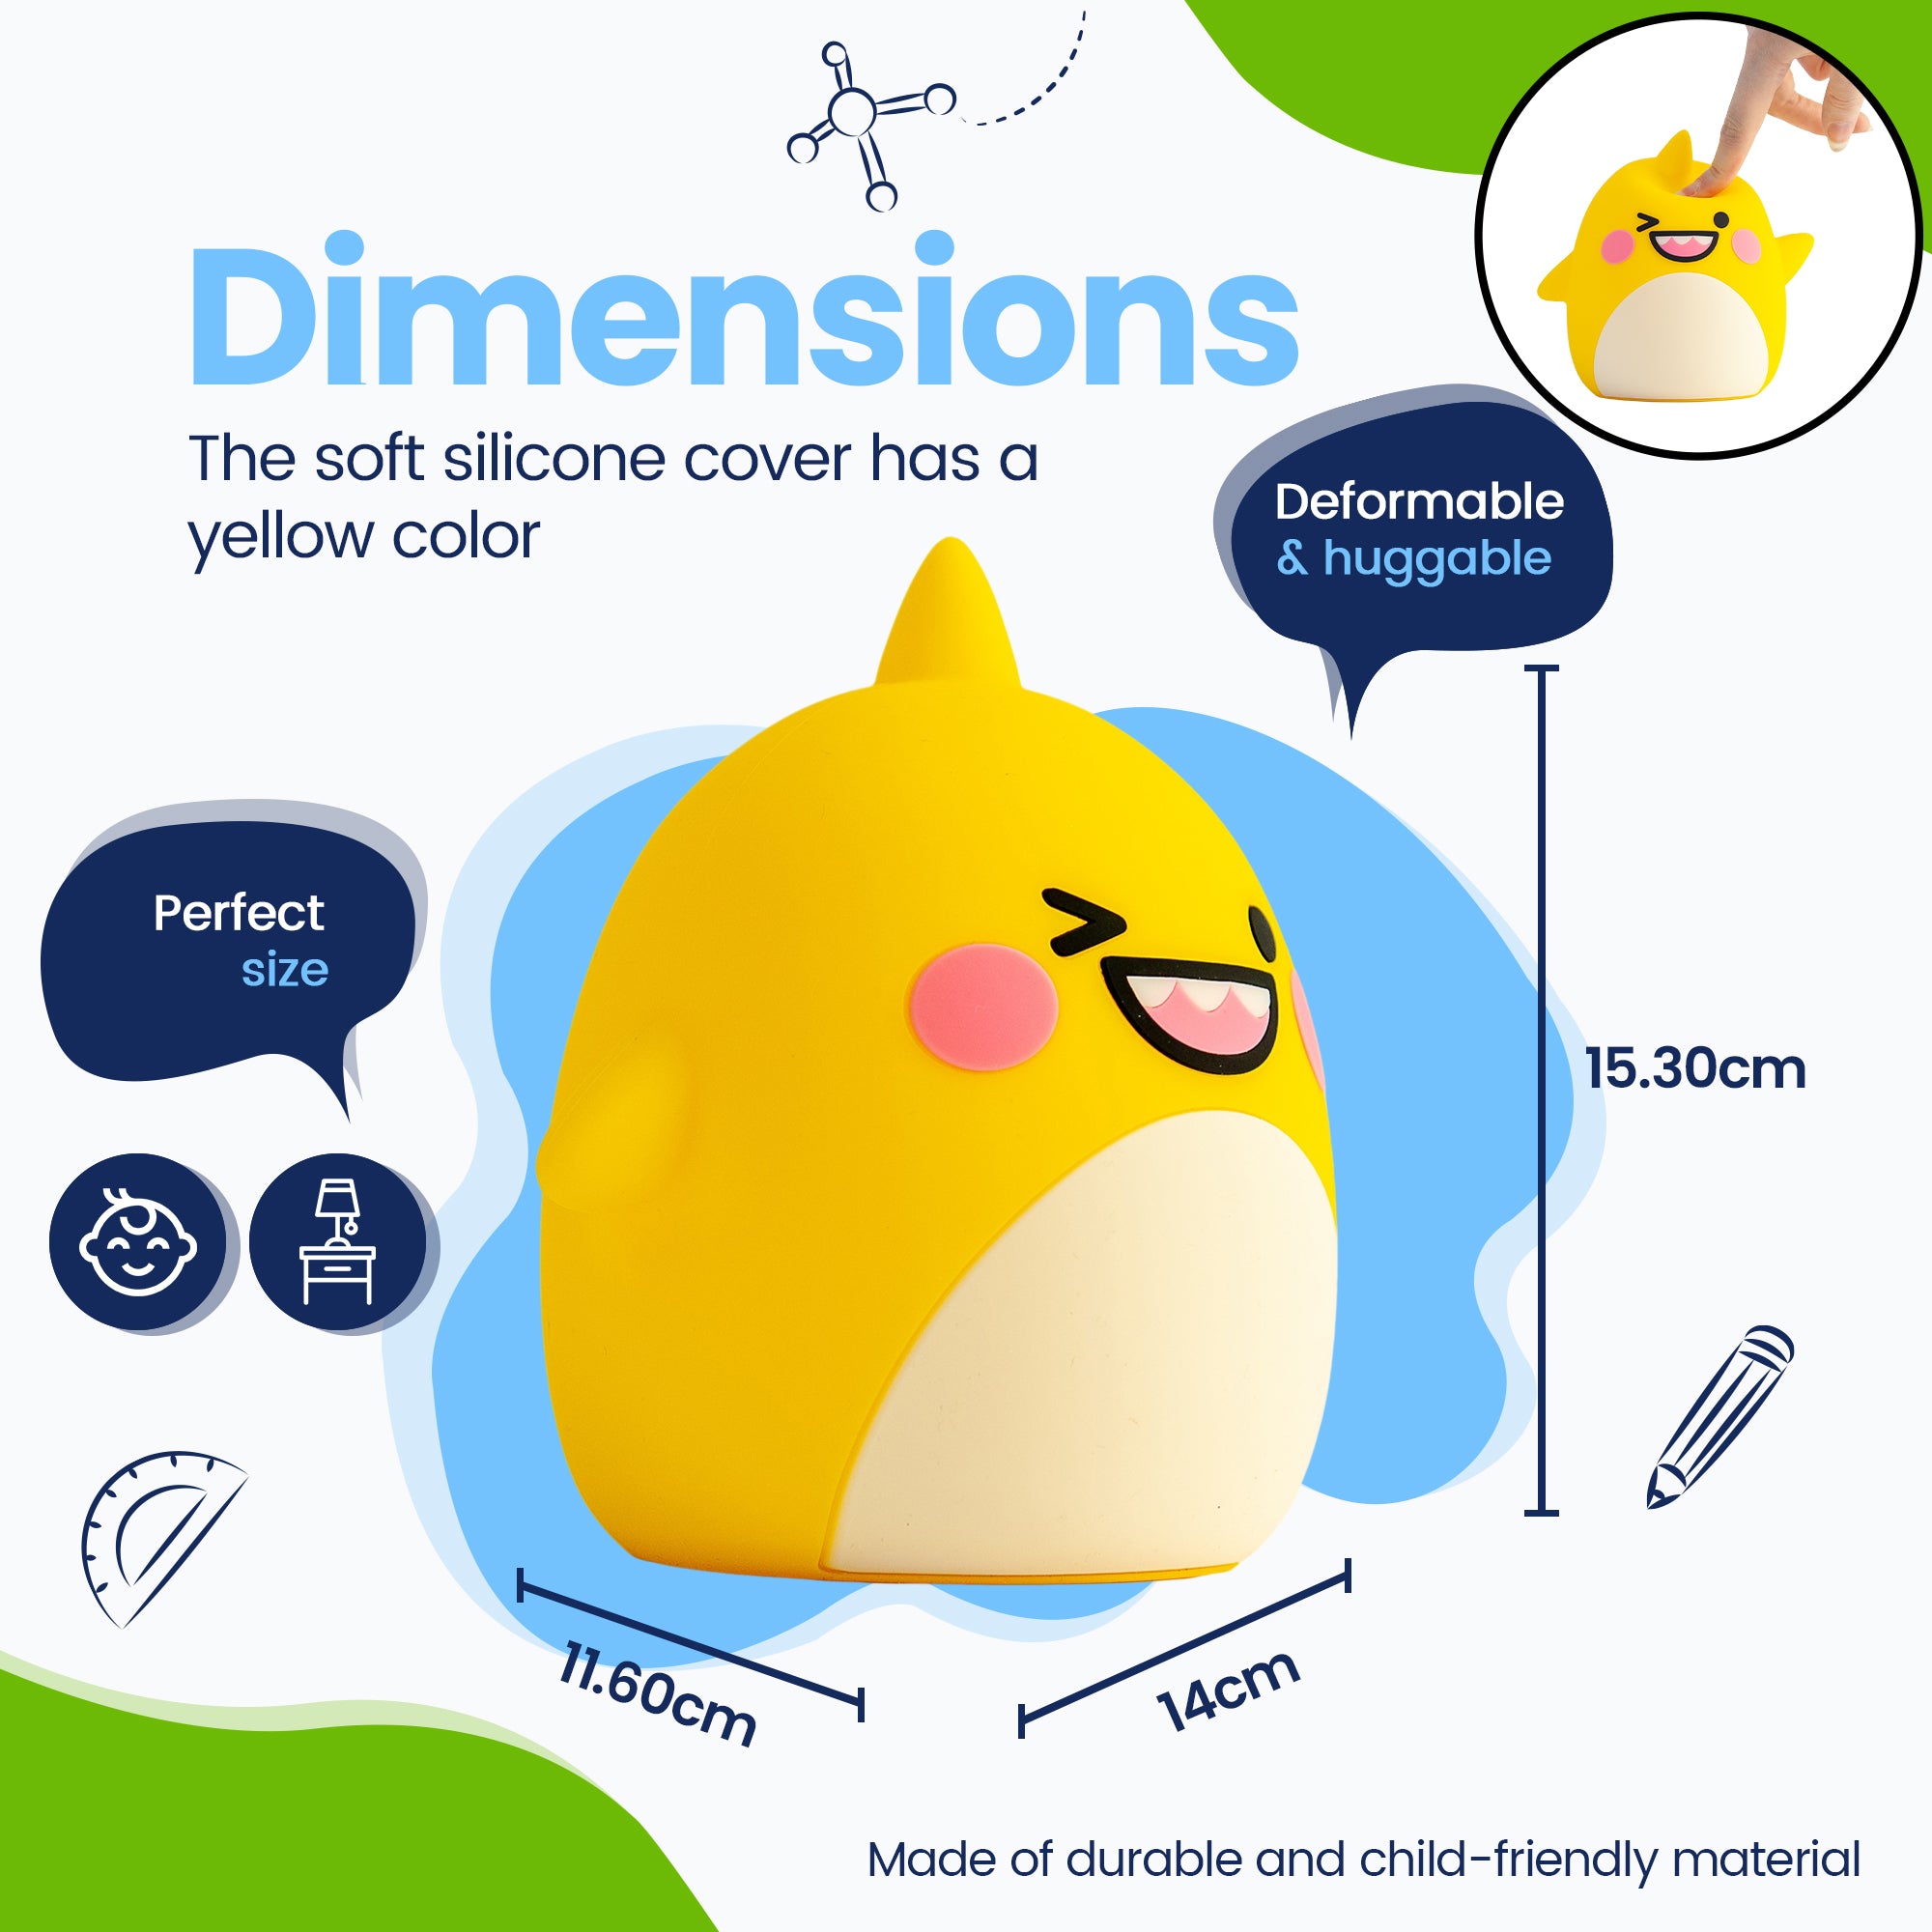 Dimensioner Baby Haj Natlampe - Perfekt størrelse - Premium Design - Silikoneovertrækket er gult i farven